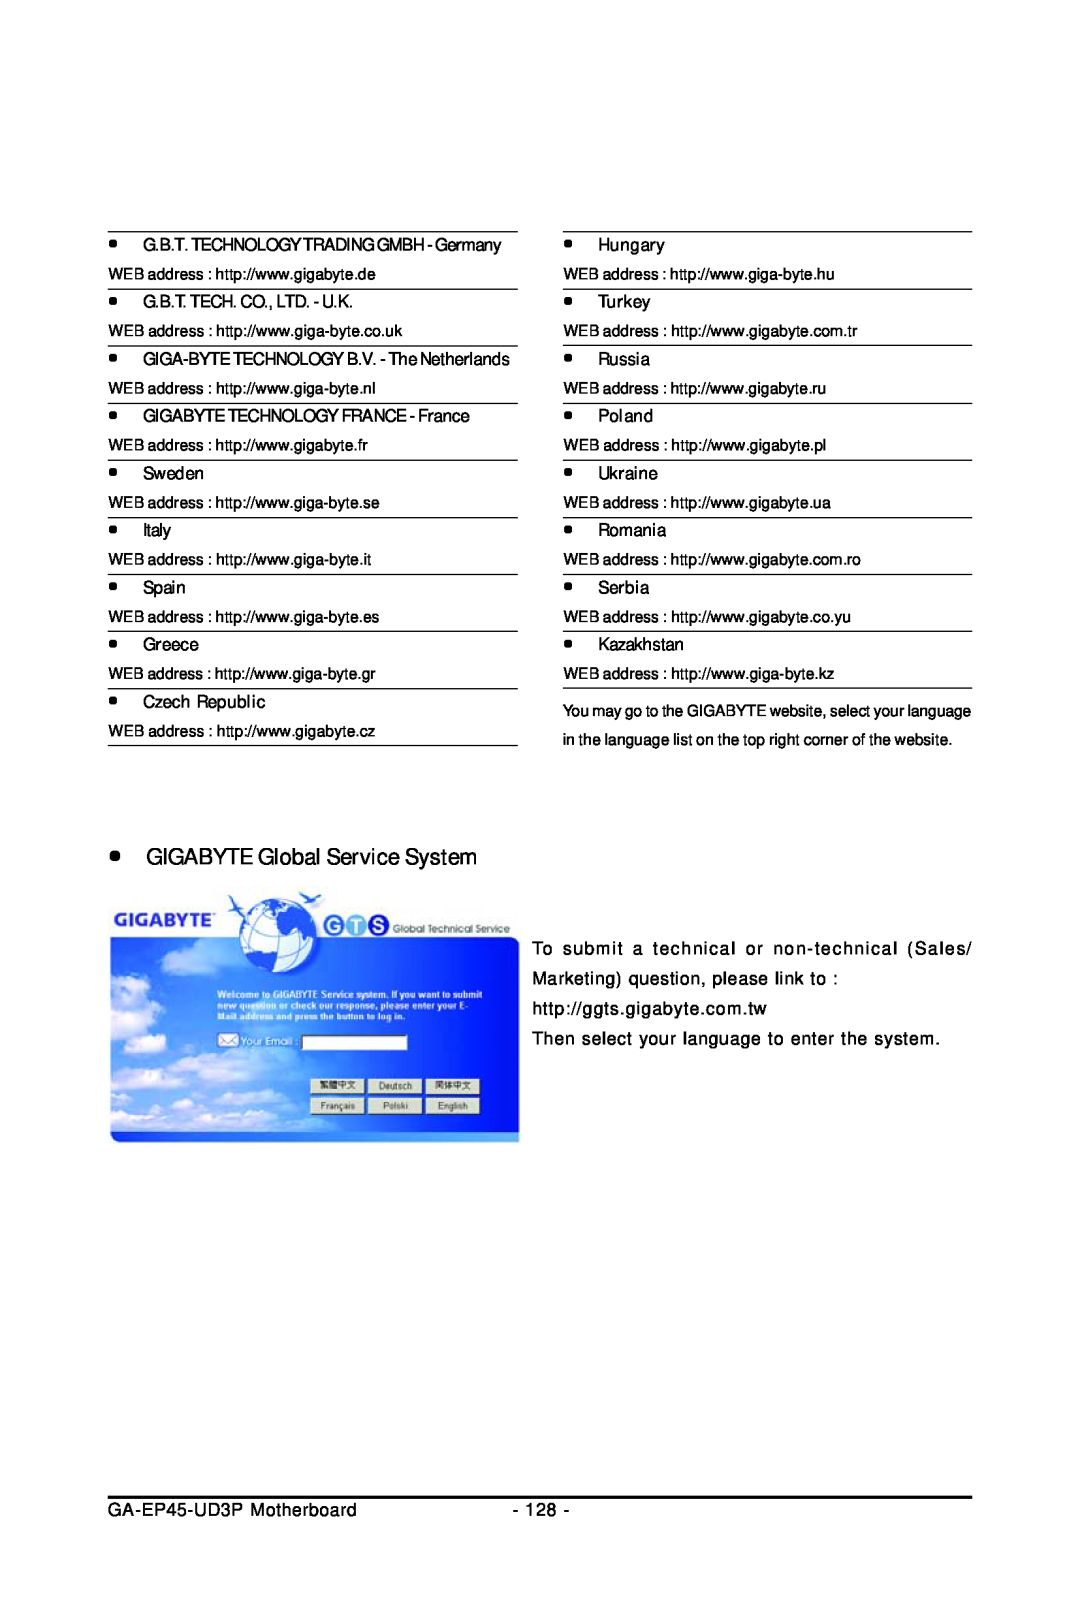 Gigabyte GA-EP45-UD3P y GIGABYTE Global Service System, y Sweden, y Italy, y Spain, y Greece, y Czech Republic, y Hungary 